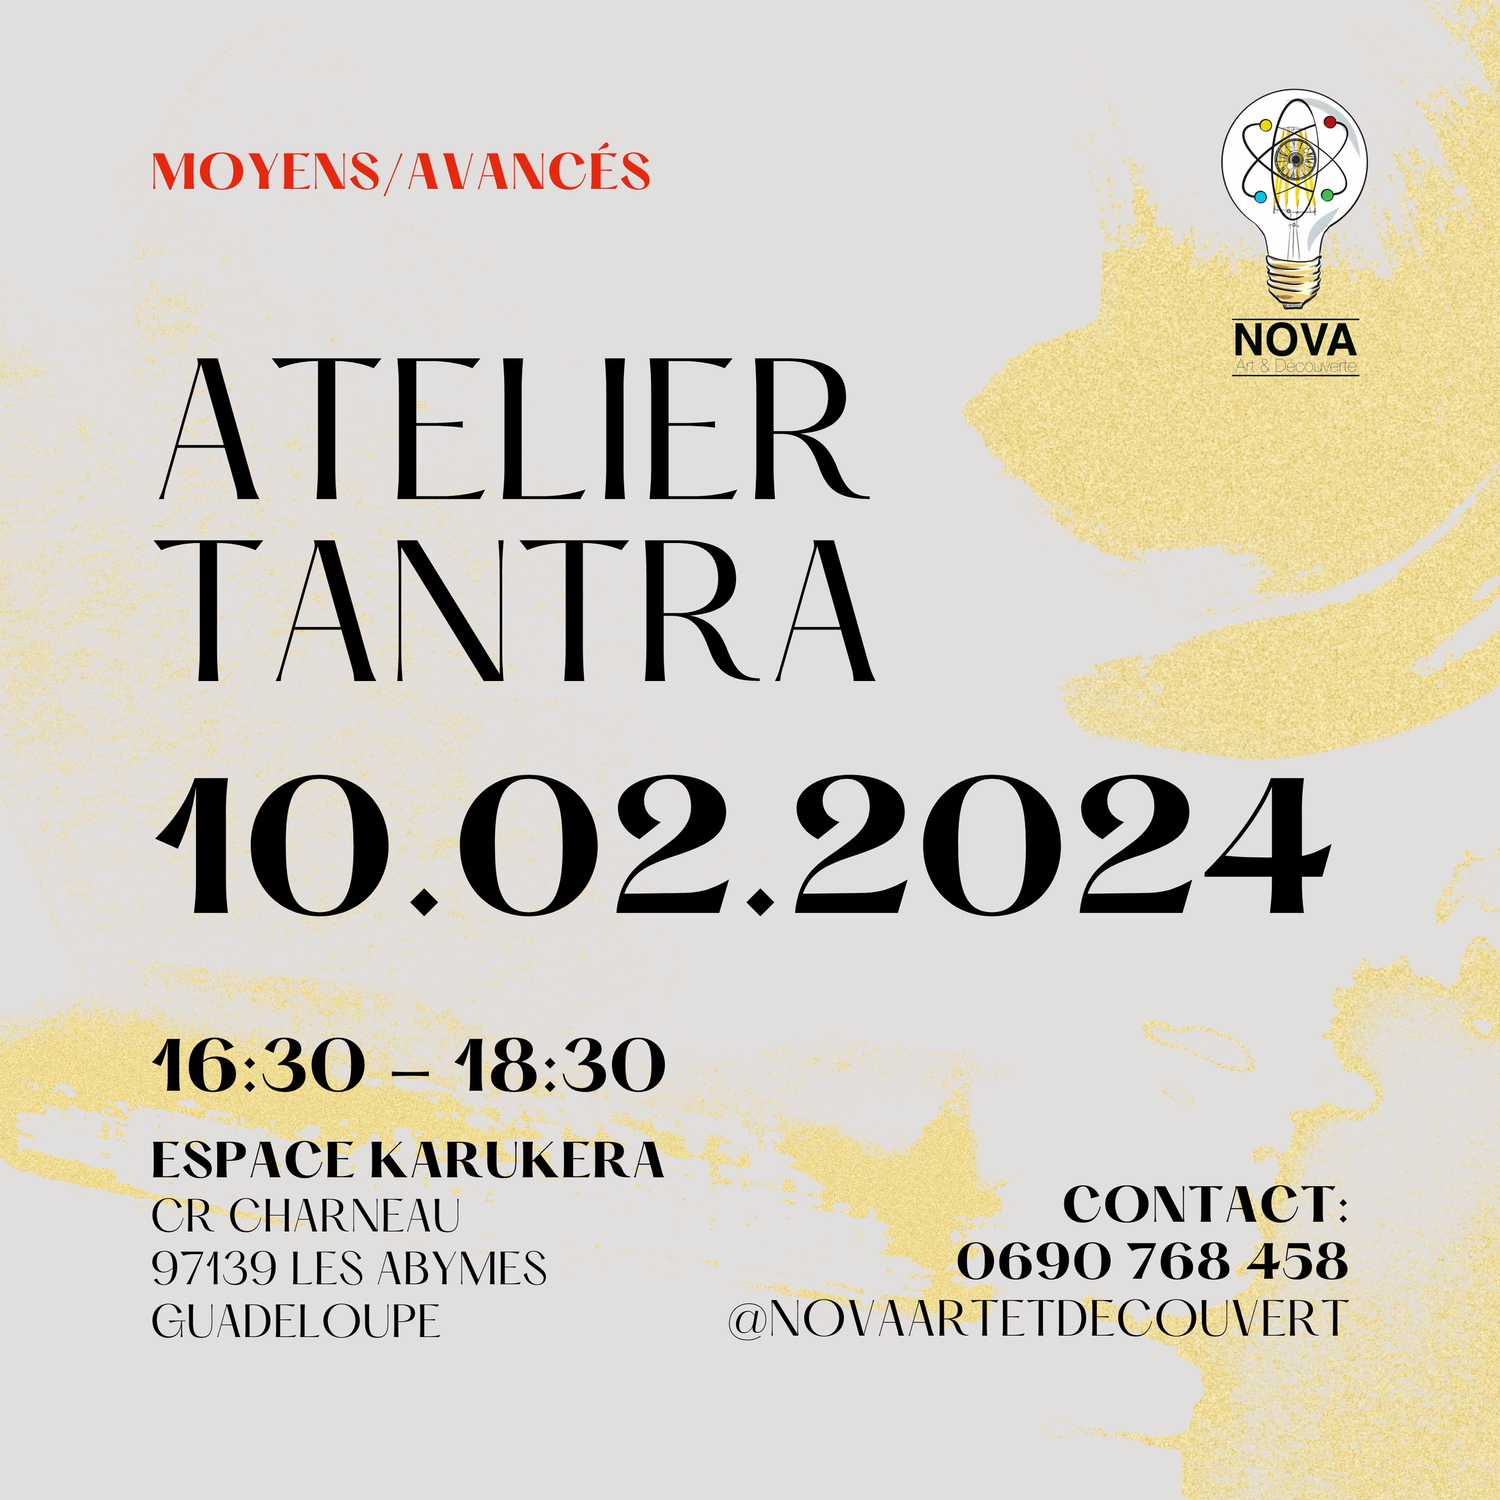 ATELIER TANTRA MOY./AVANCÉS ~ FEV. 2024